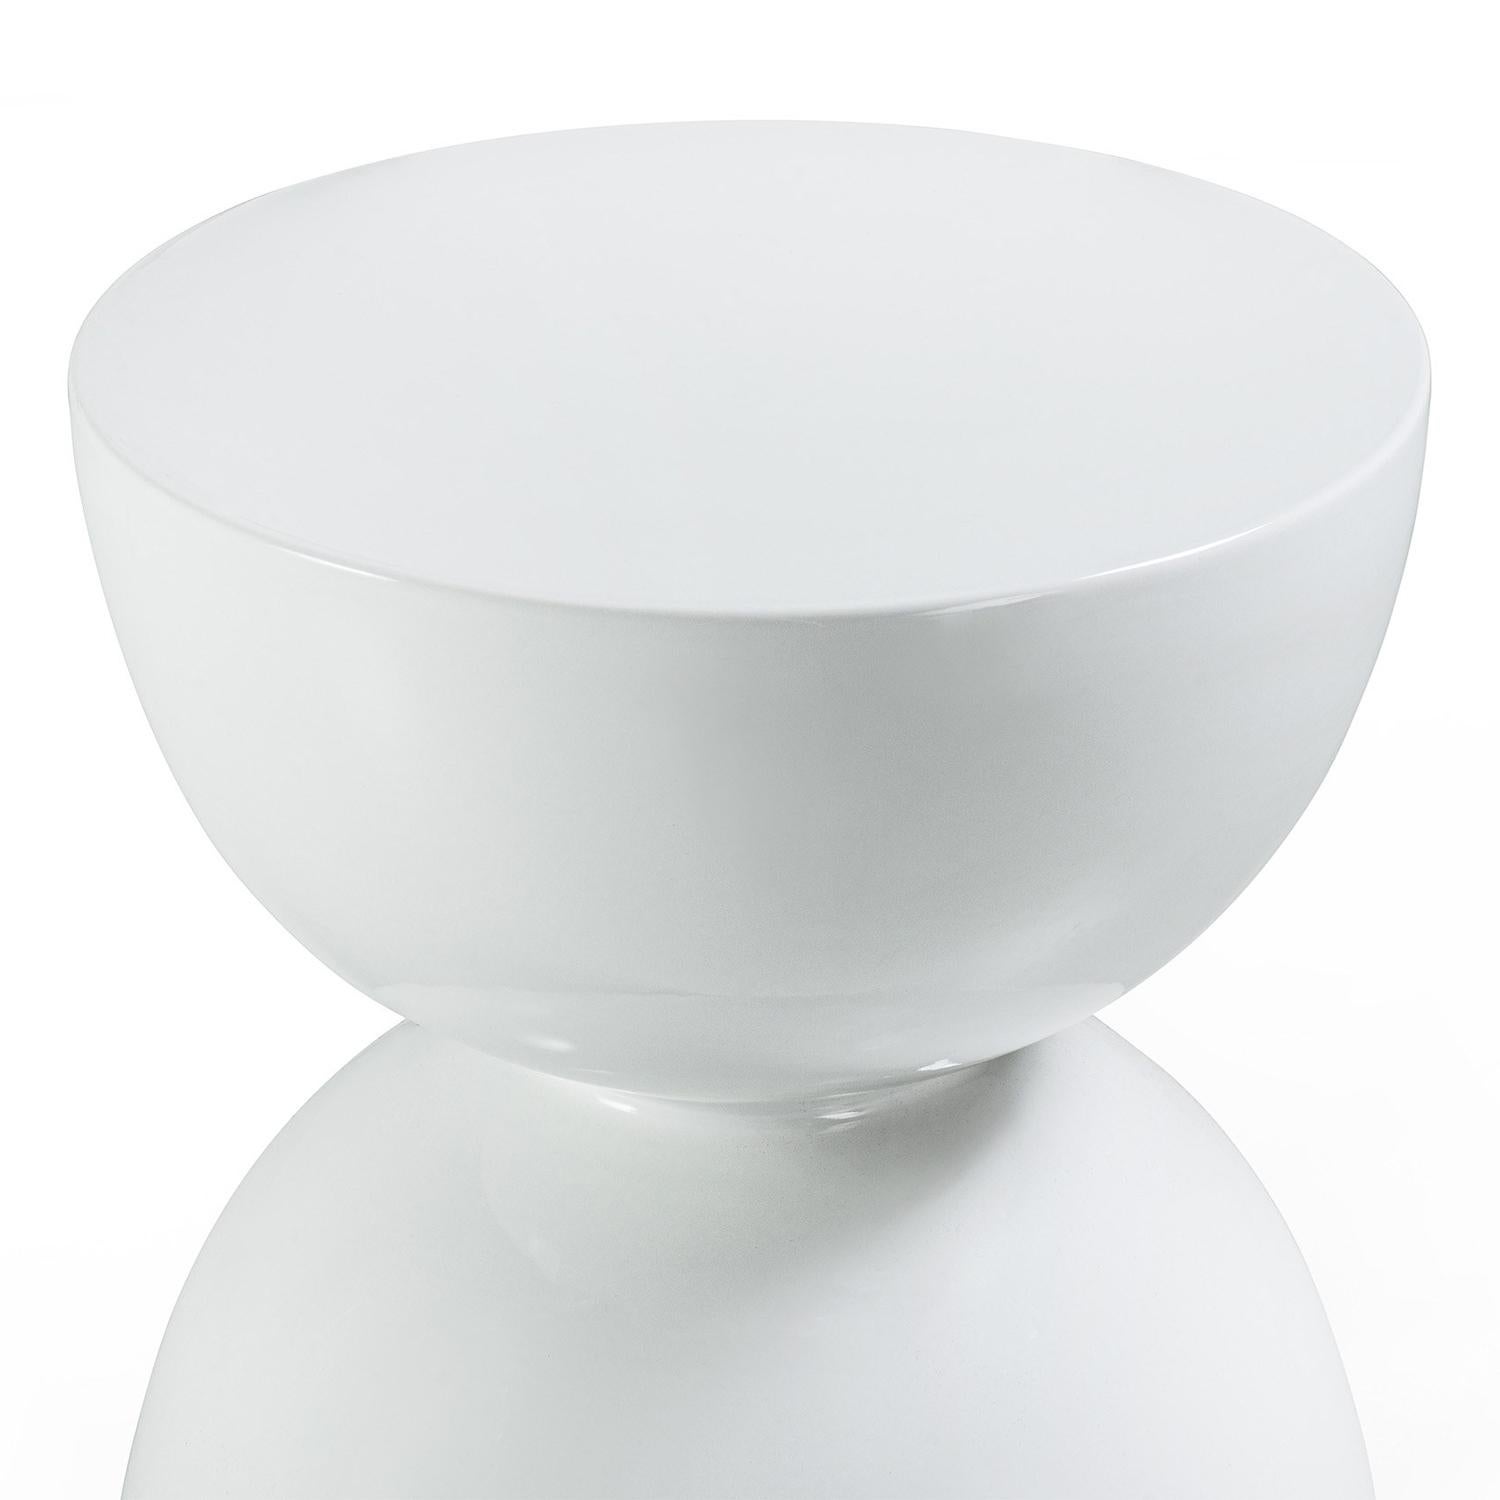 Stool Spheres White all in enameled 
ceramic in white finish.